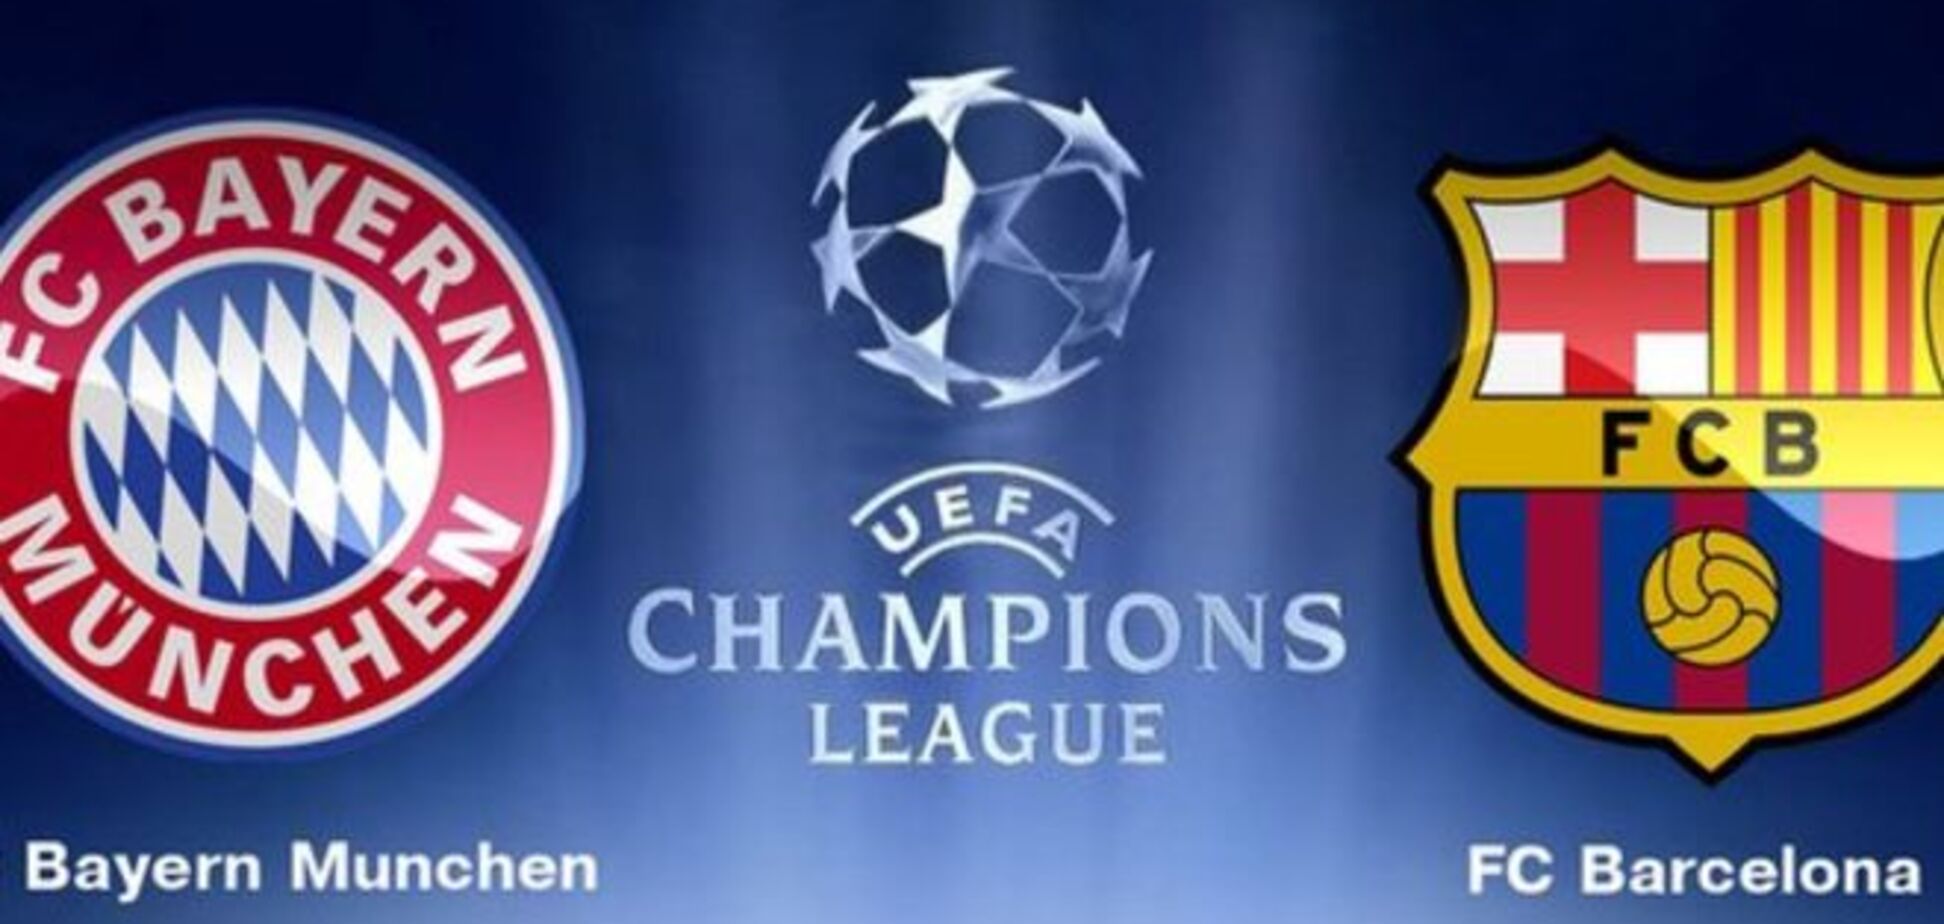 Бавария - Барселона: прогноз букмекеров на 1/2 финала Лиги чемпионов